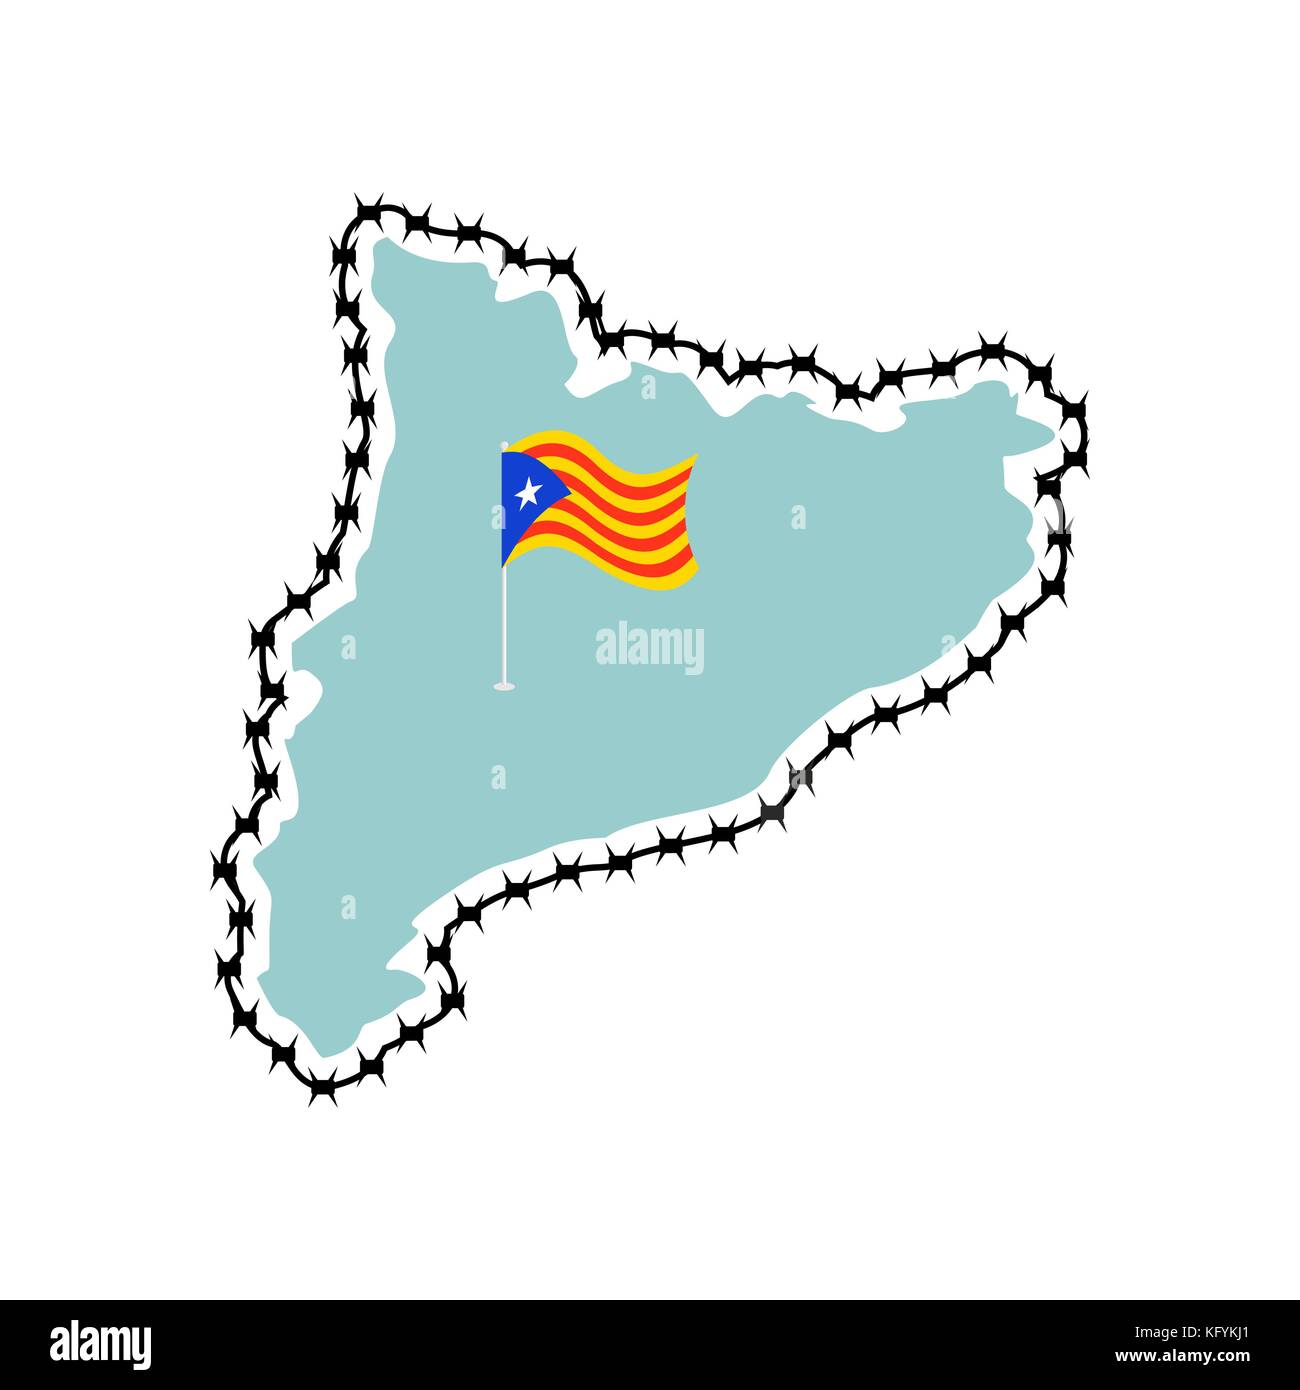 La Catalogne est la souveraineté et l'indépendance. estelada blava la carte et barbelés. protection des frontières de l'Etat. Illustration de Vecteur